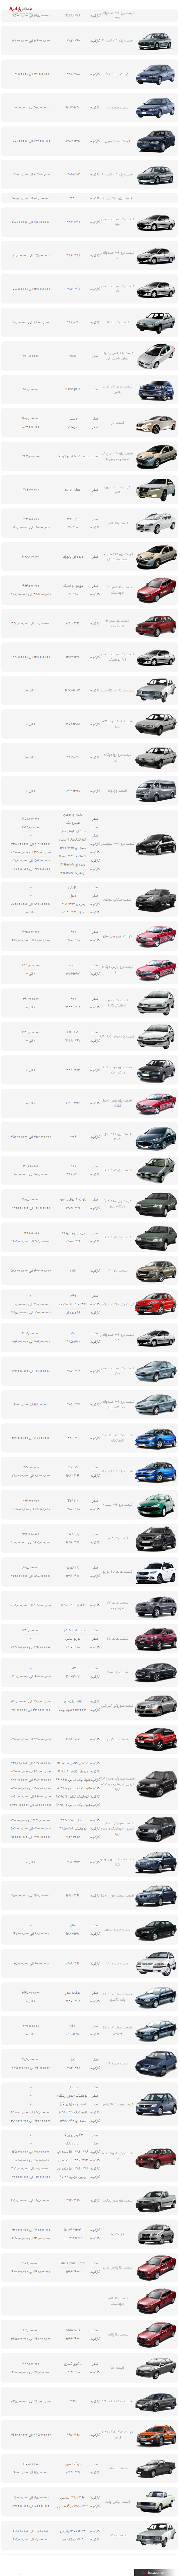 قیمت محصولات ایران خودرو در بازار امروز تهران ۲ بهمن ۱۴۰۰